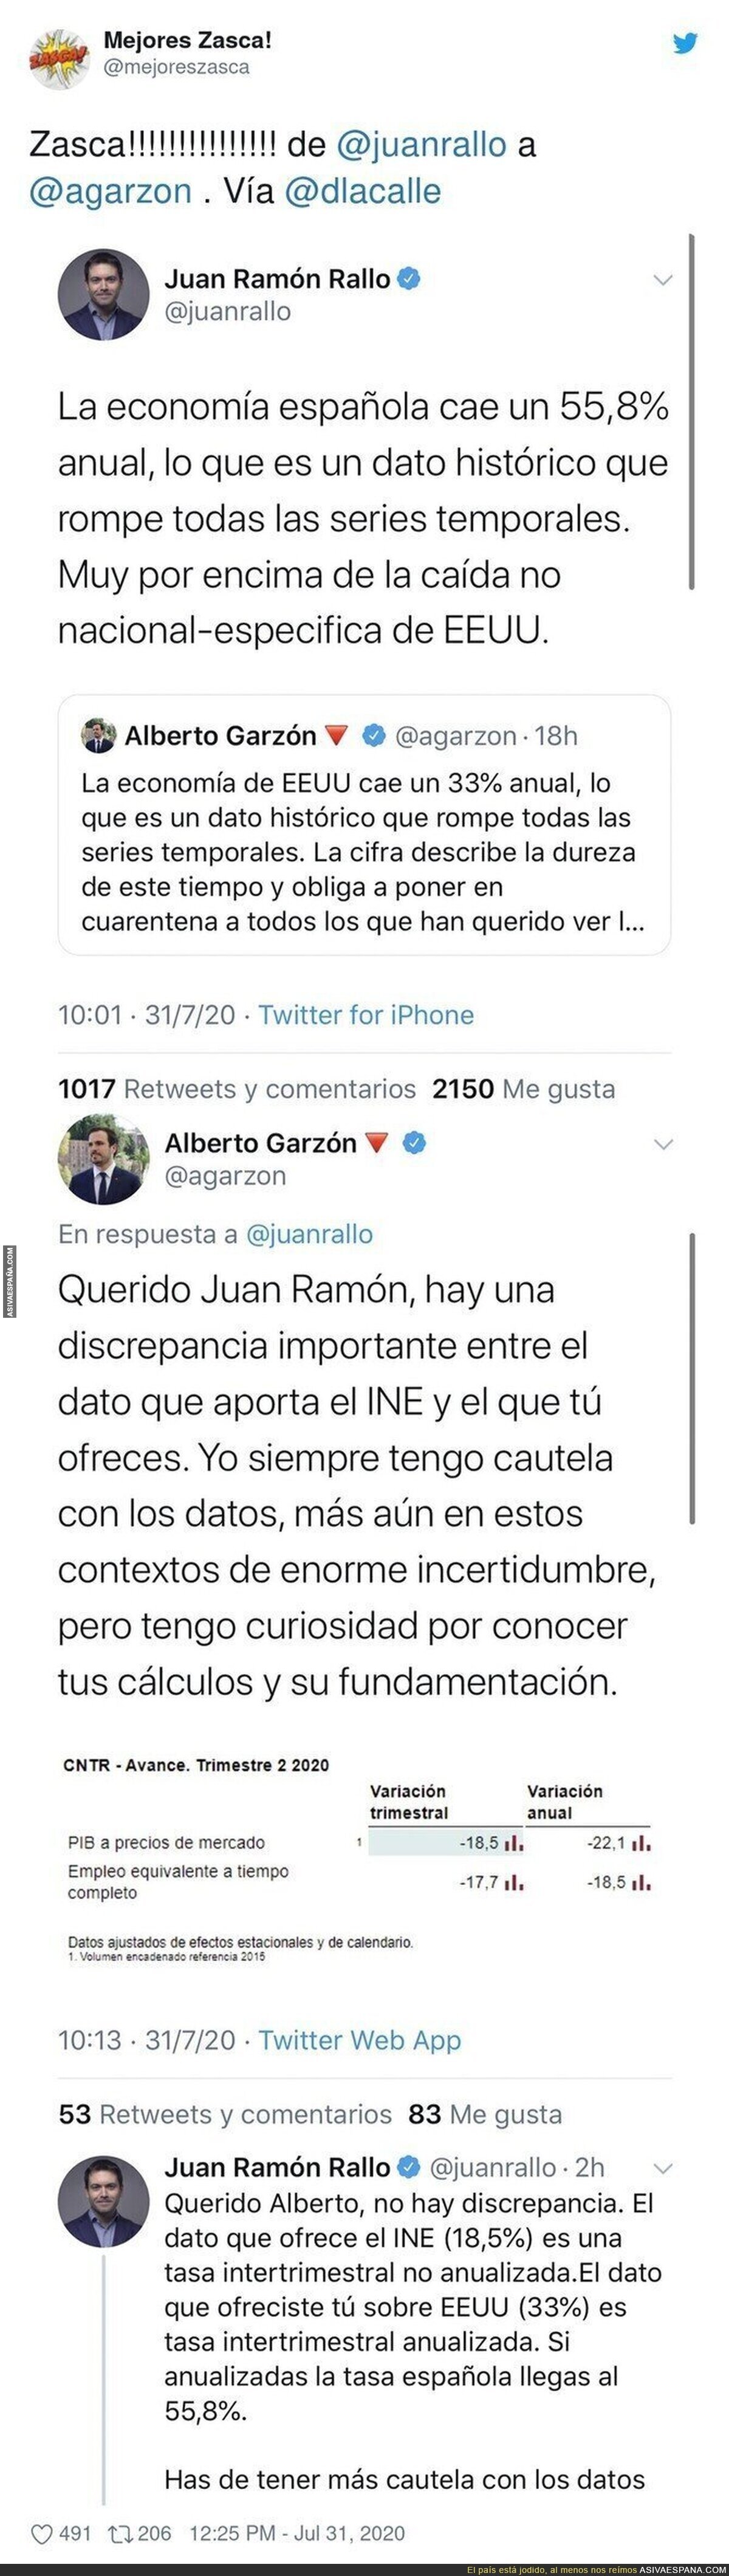 Alberto Garzón se lleva un ZASCA tremendo de Juan Ramón Rallo por los datos económicos